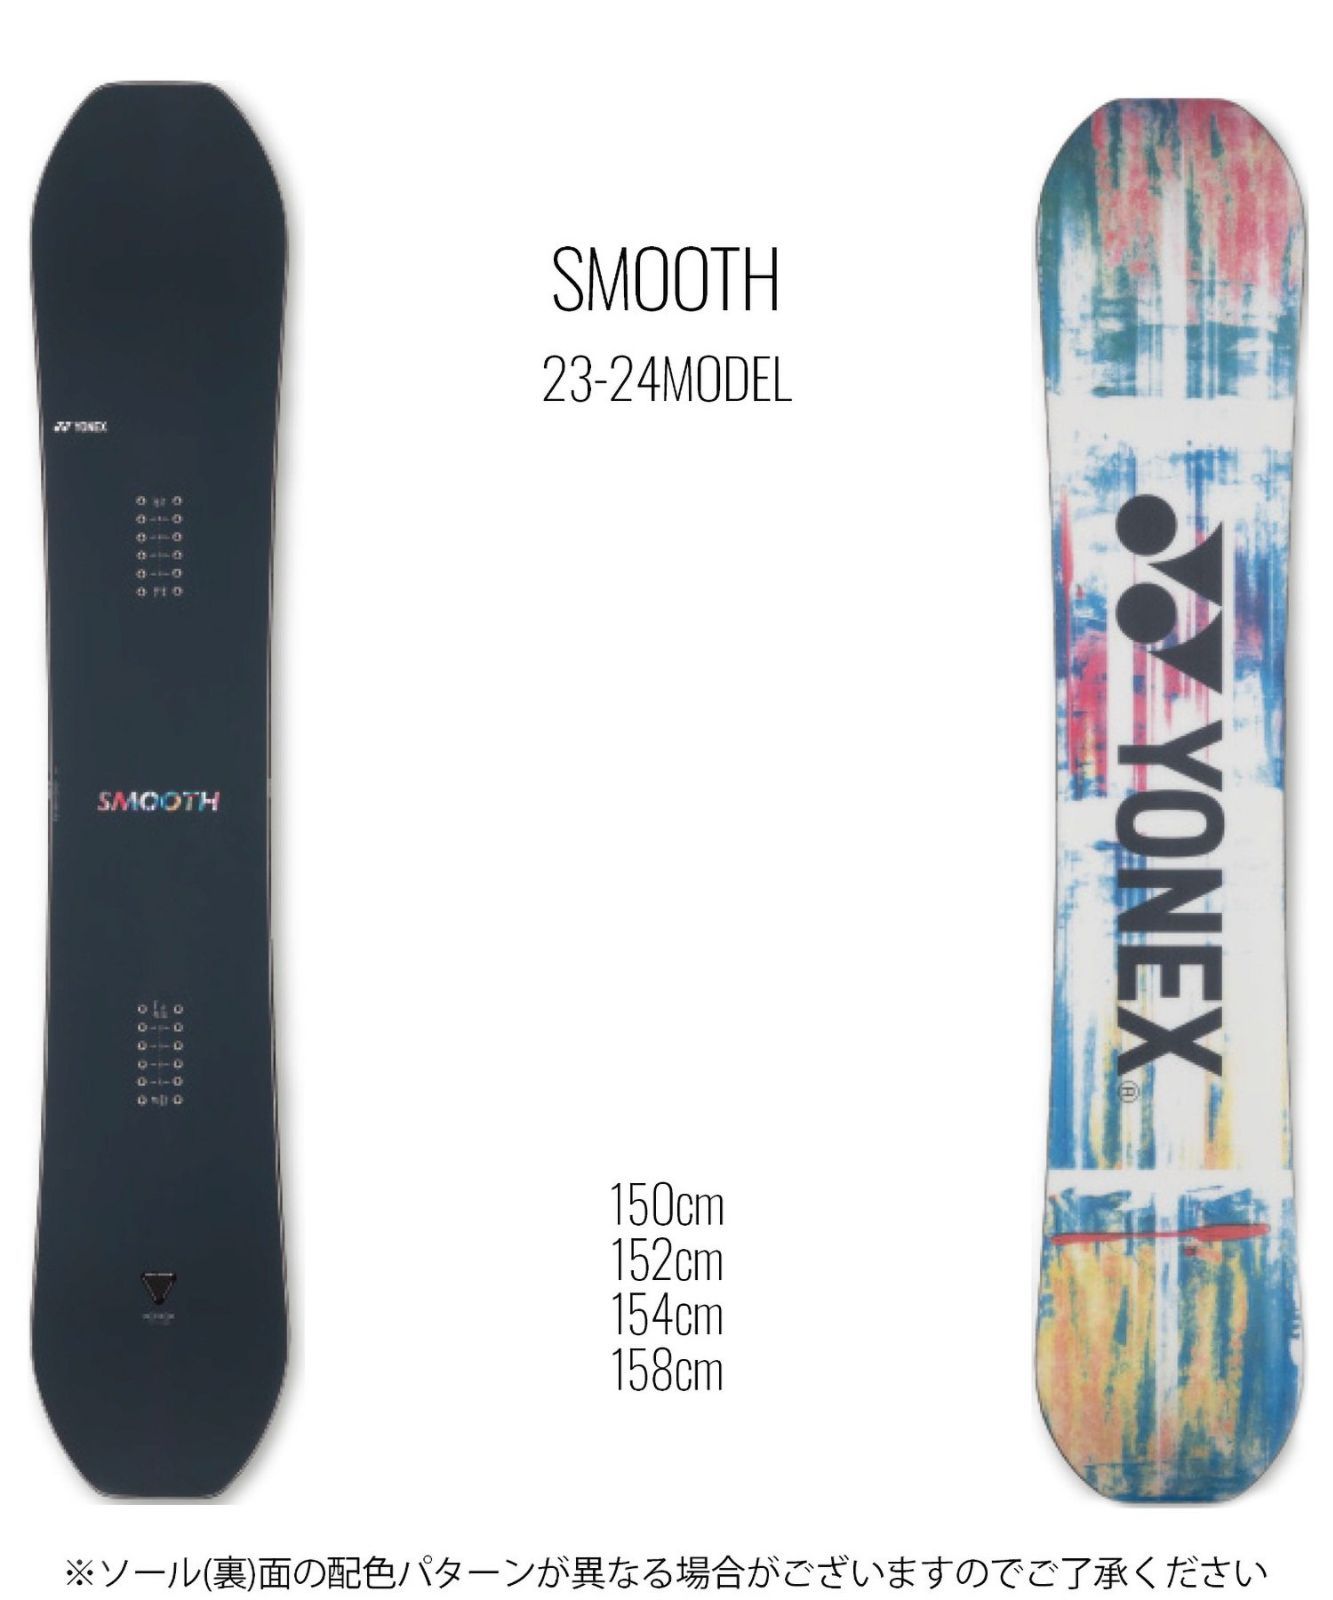 YONEX SMOOTH 20-21モデル152CM 美品 - スノーボード